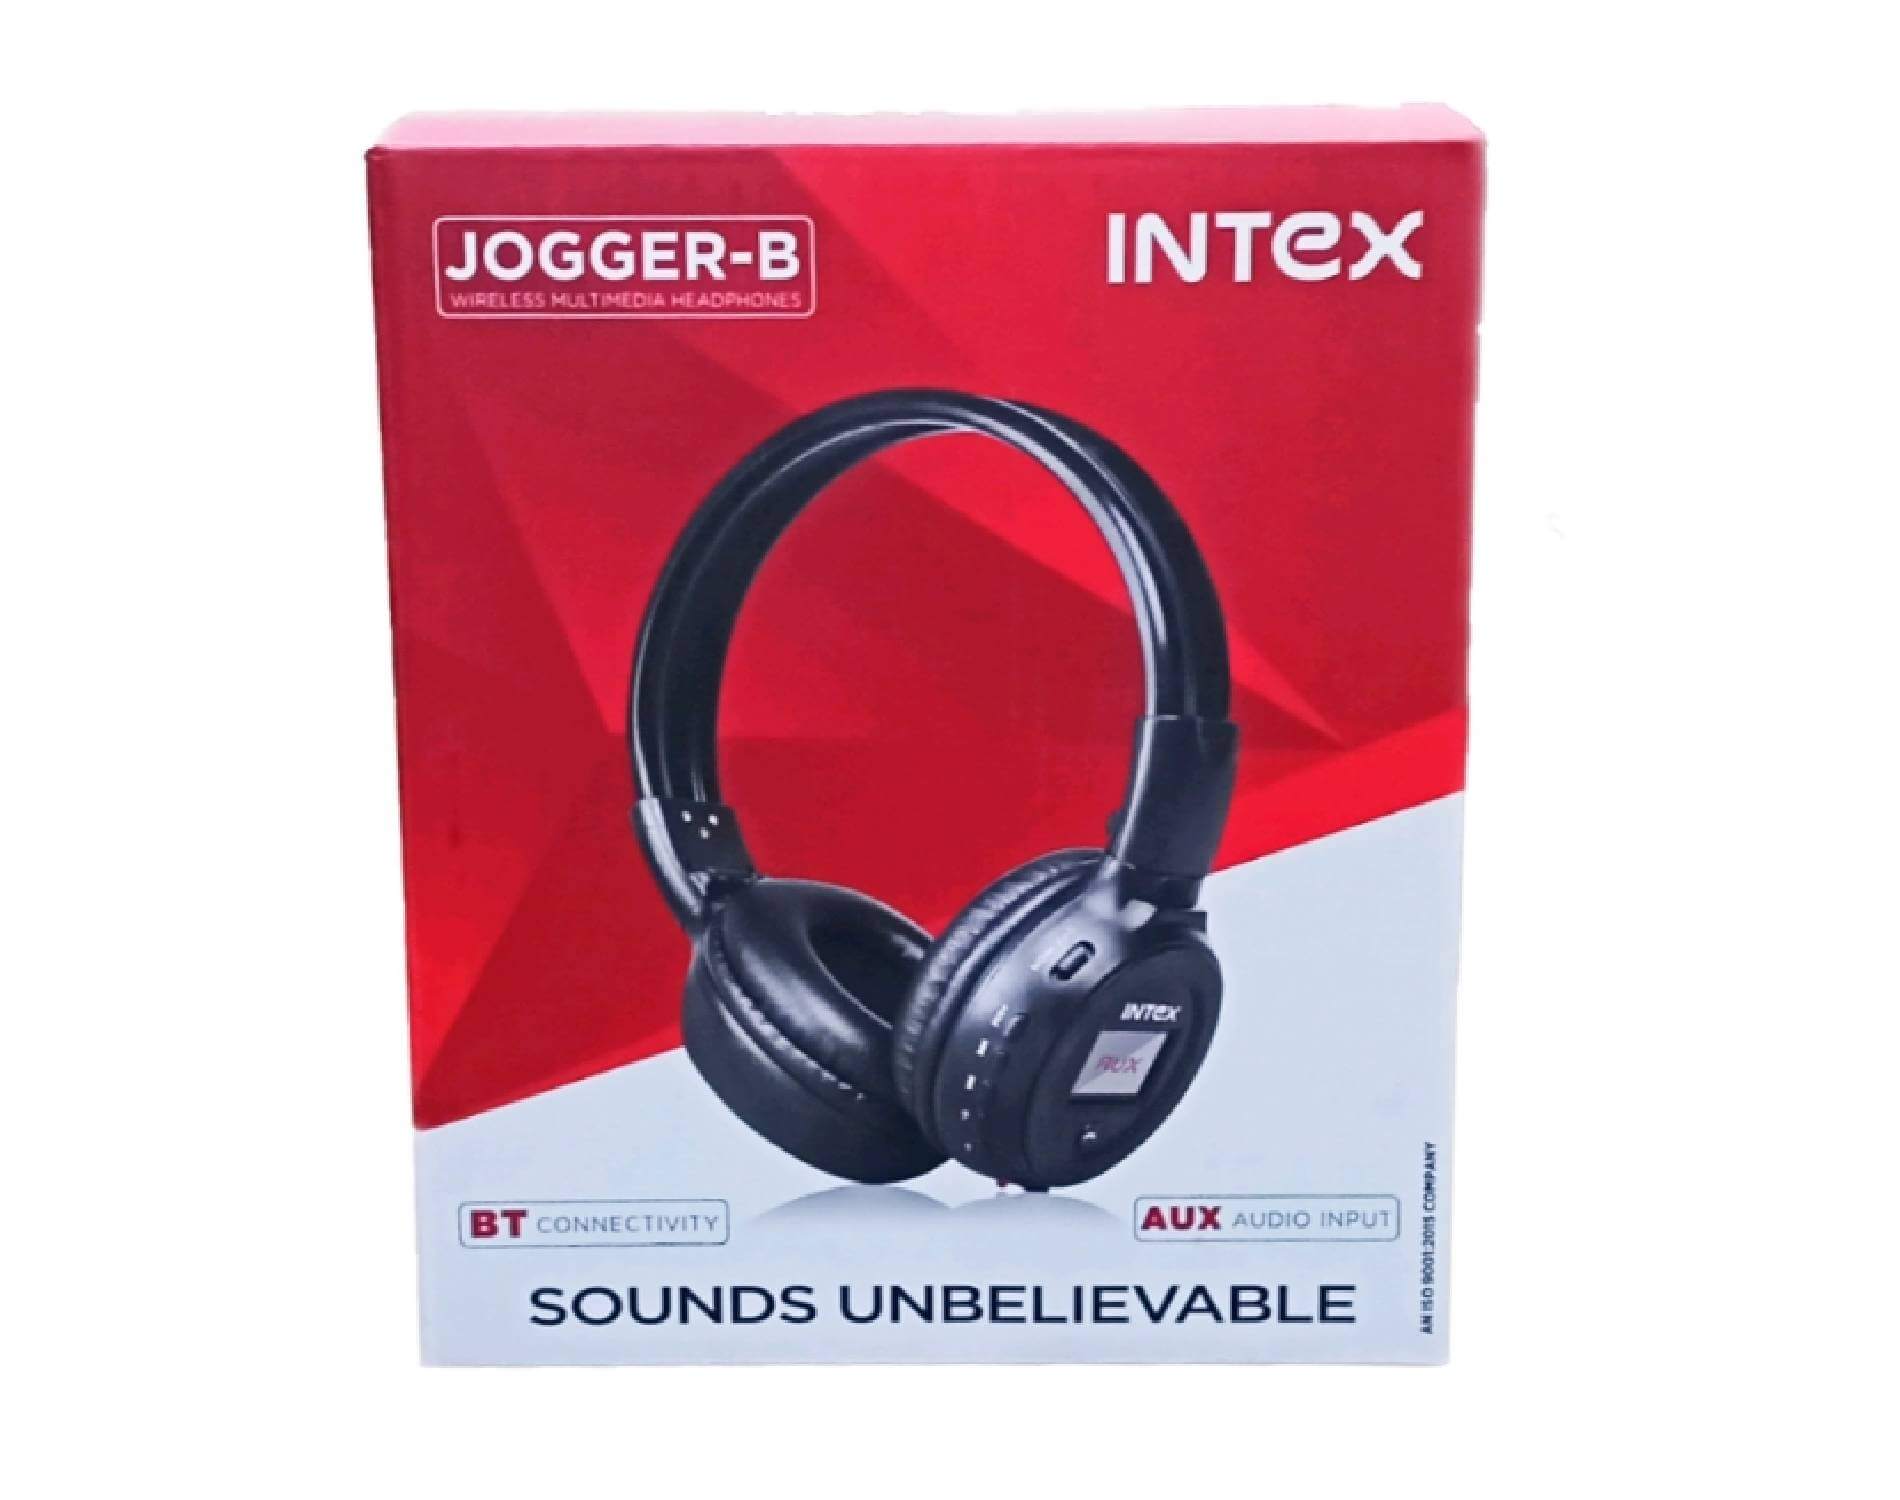 intex jogger b multimedia headphones